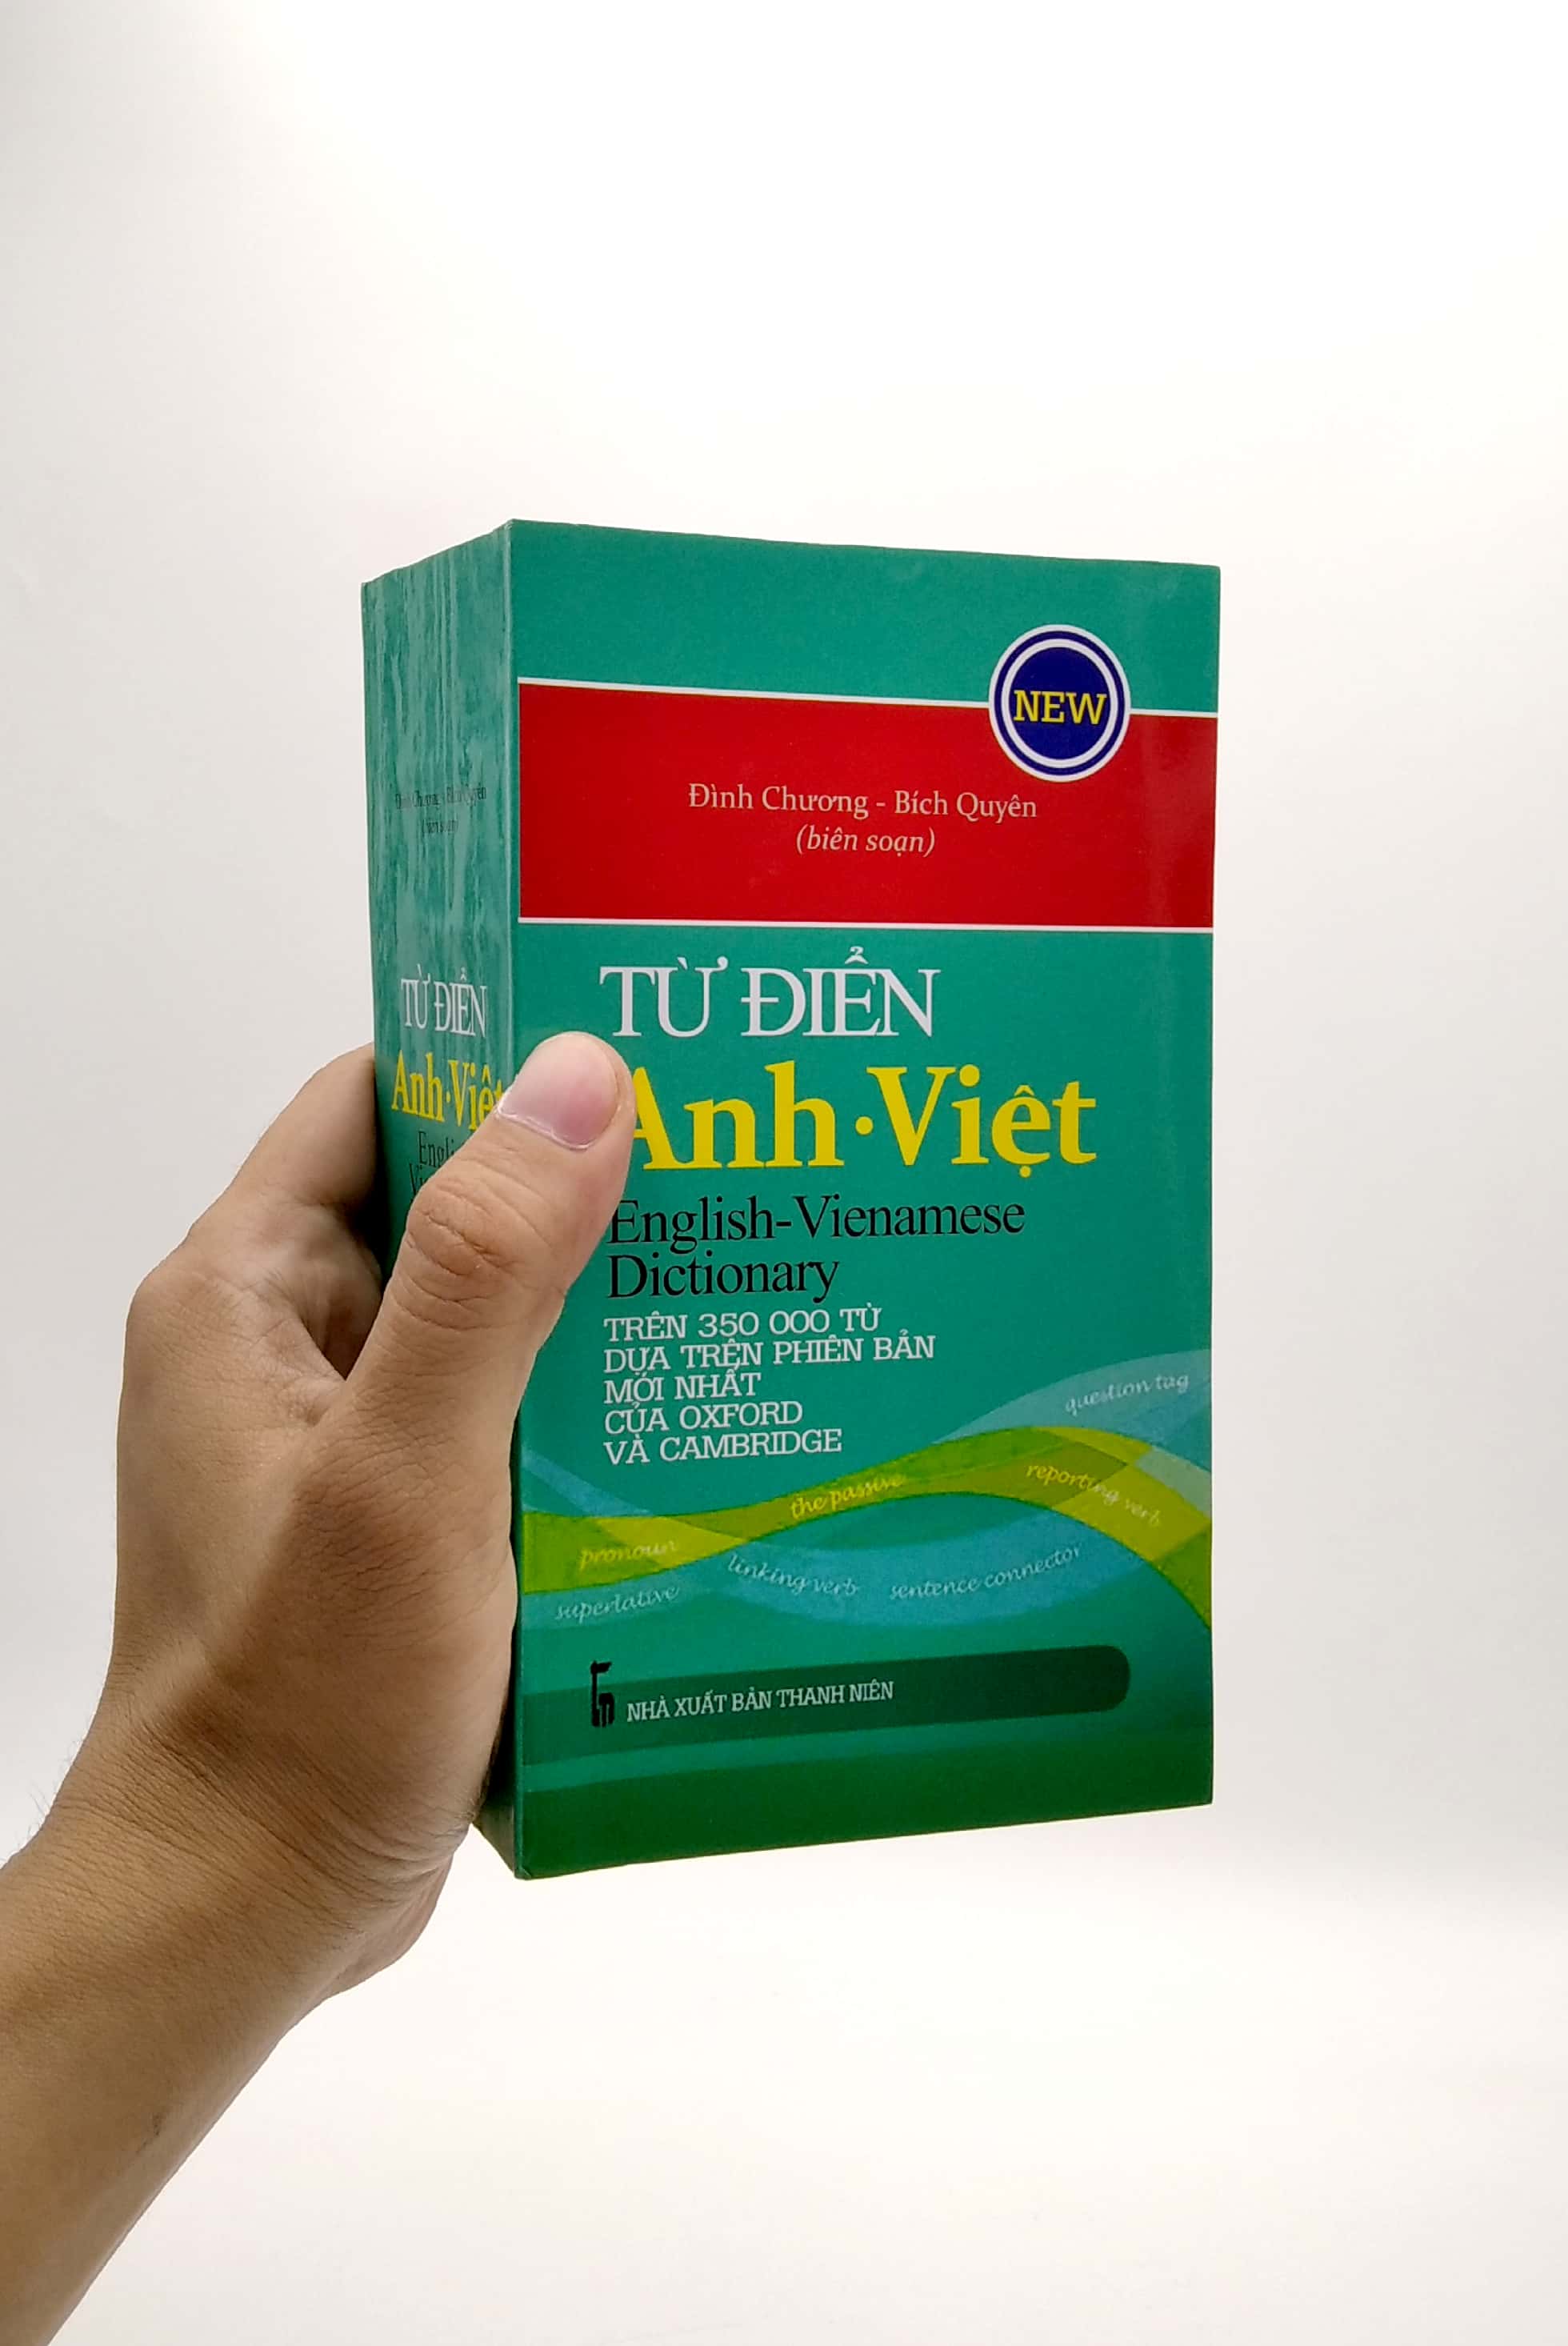 Từ Điển Anh - Việt Trên 350.000 Từ PDF